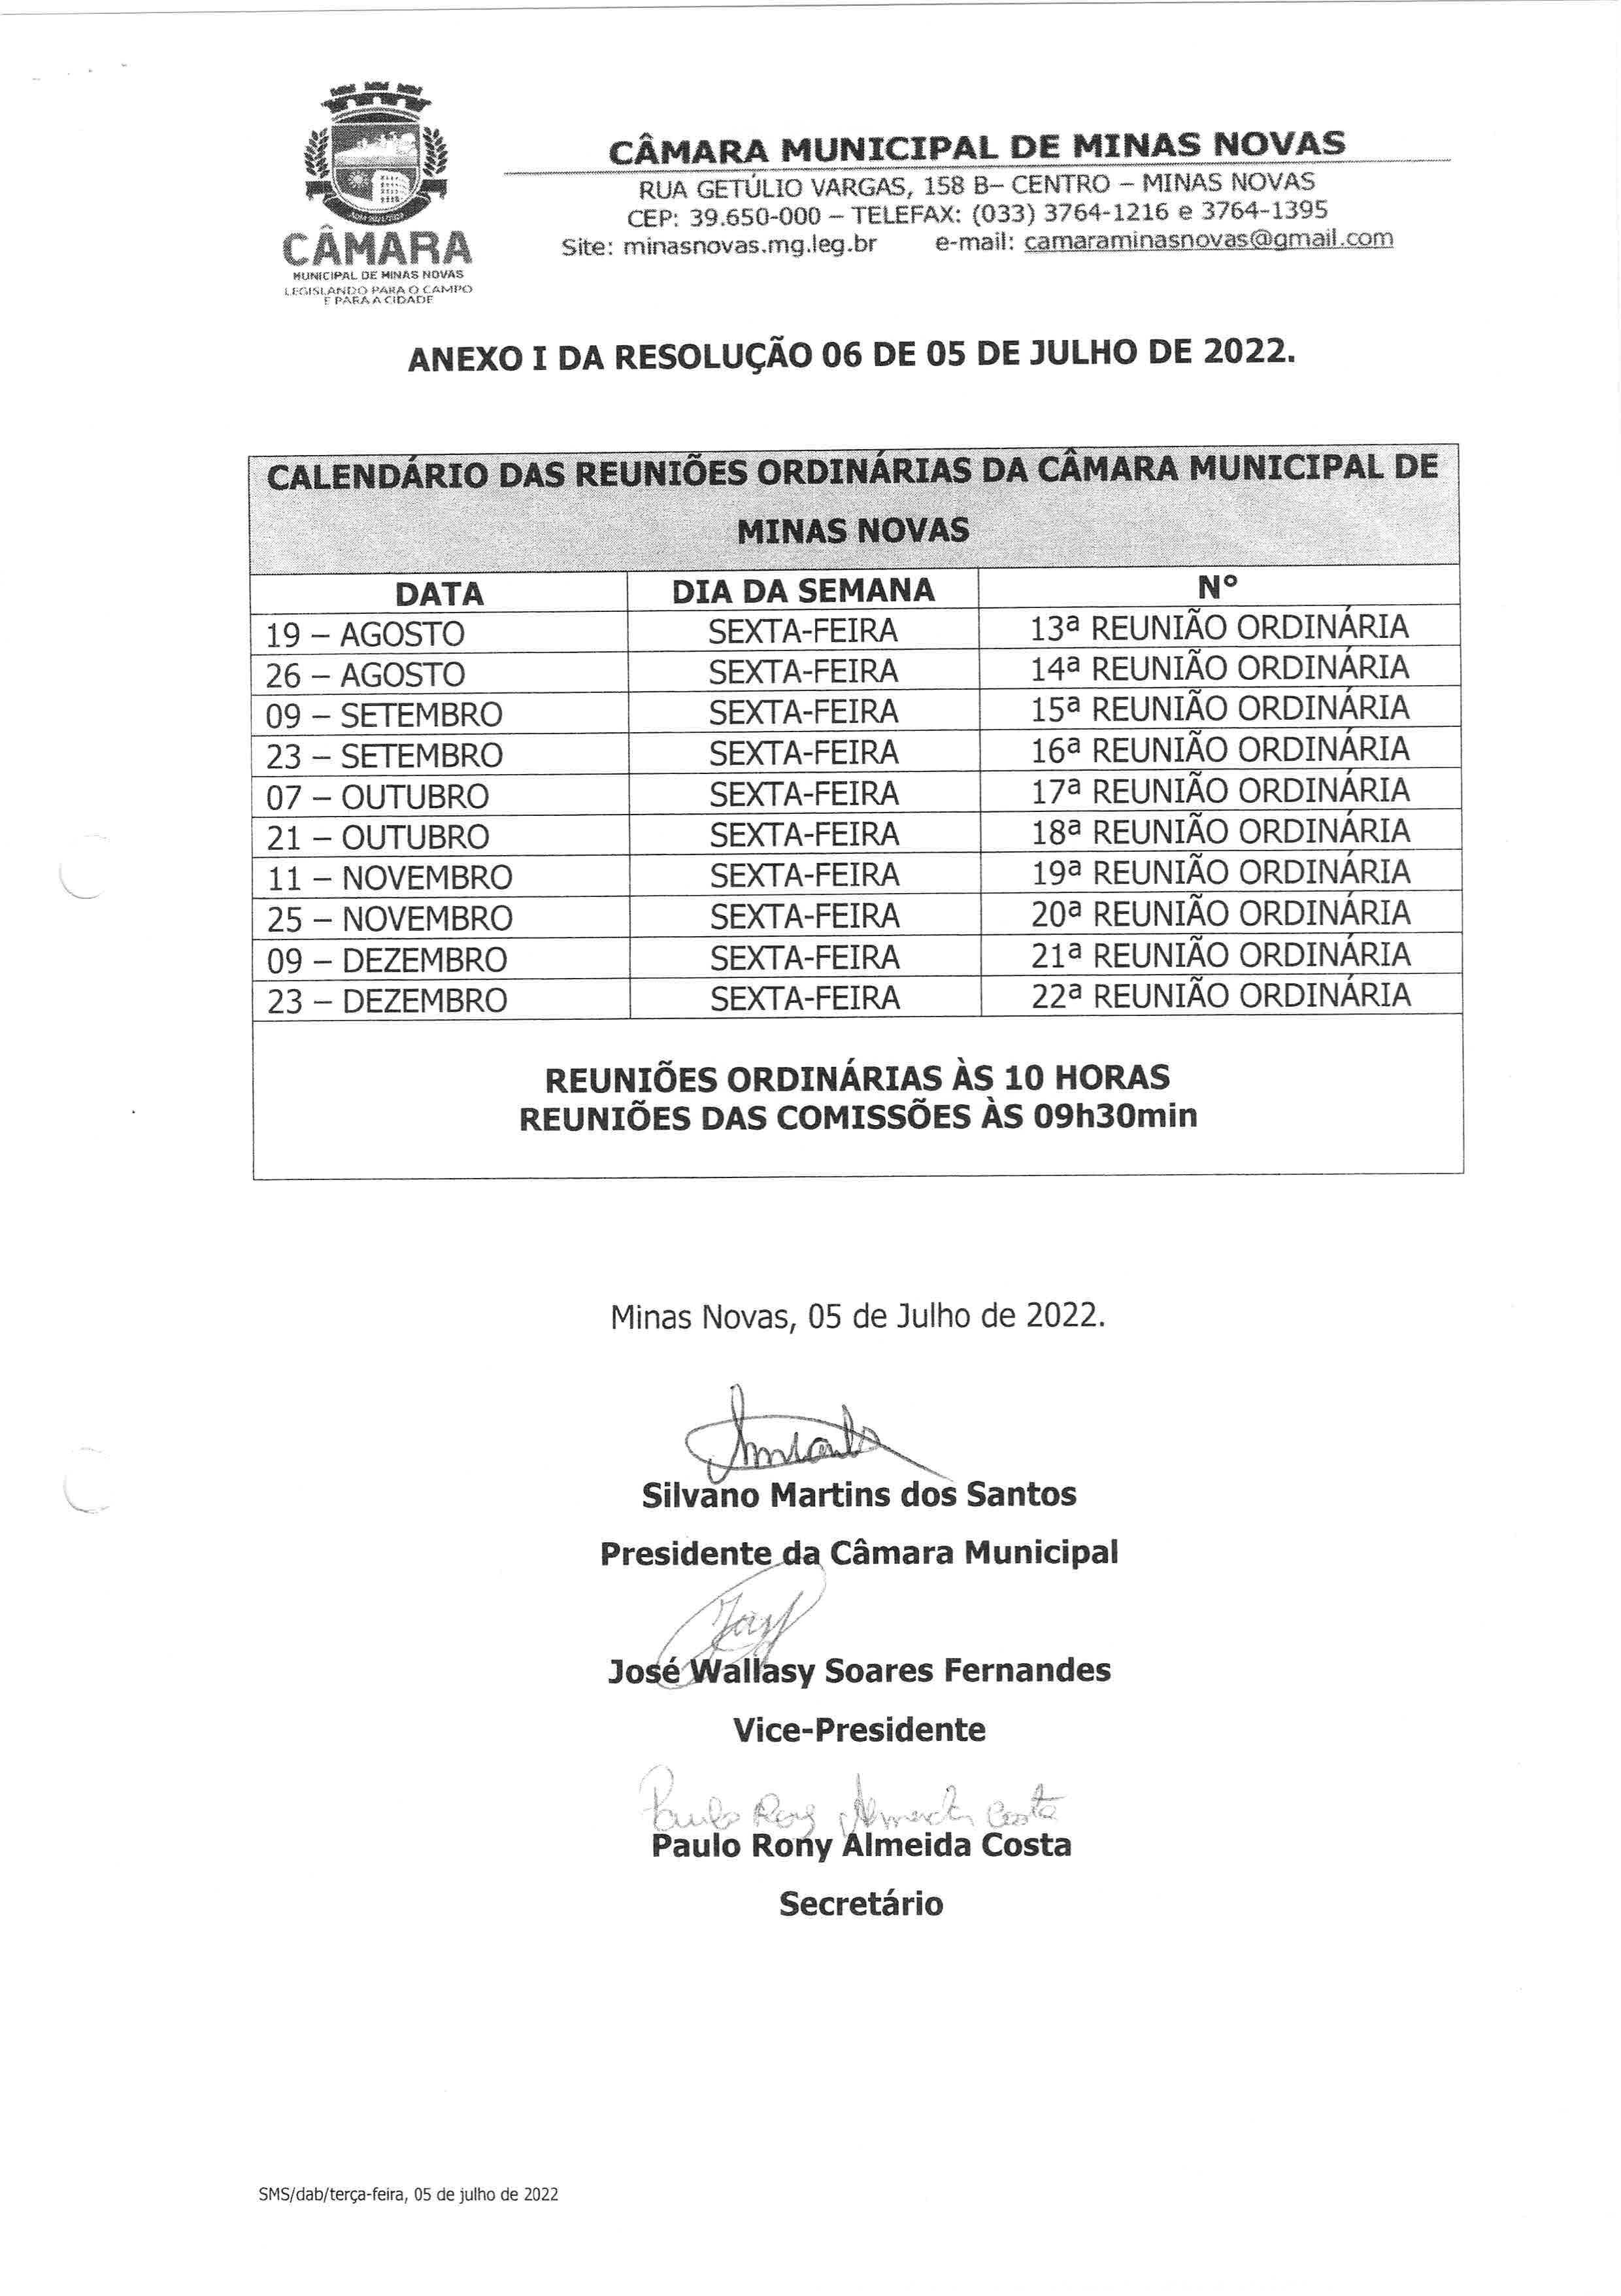 Calendário das Reuniões Ordinárias da Câmara Municipal de Minas Novas (Exercício de 2022) - 02º Semestre